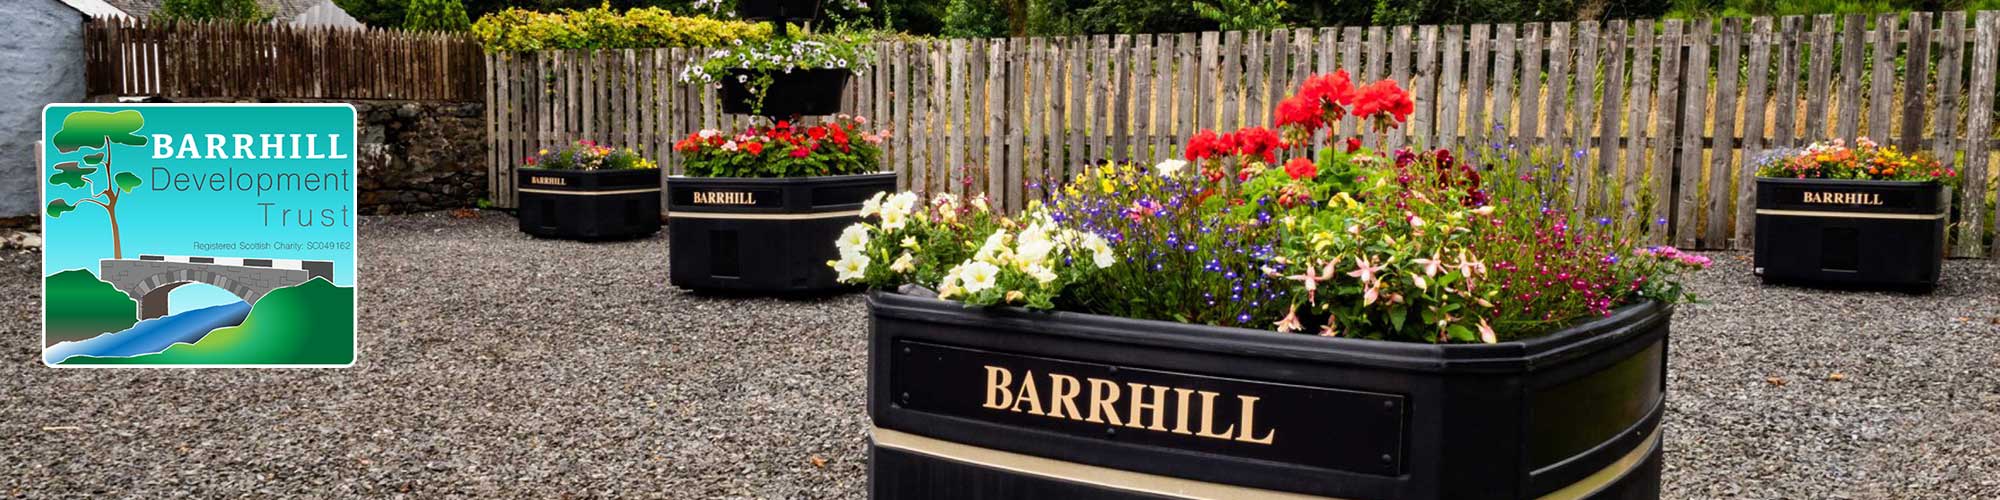 Barrhill in bloom header